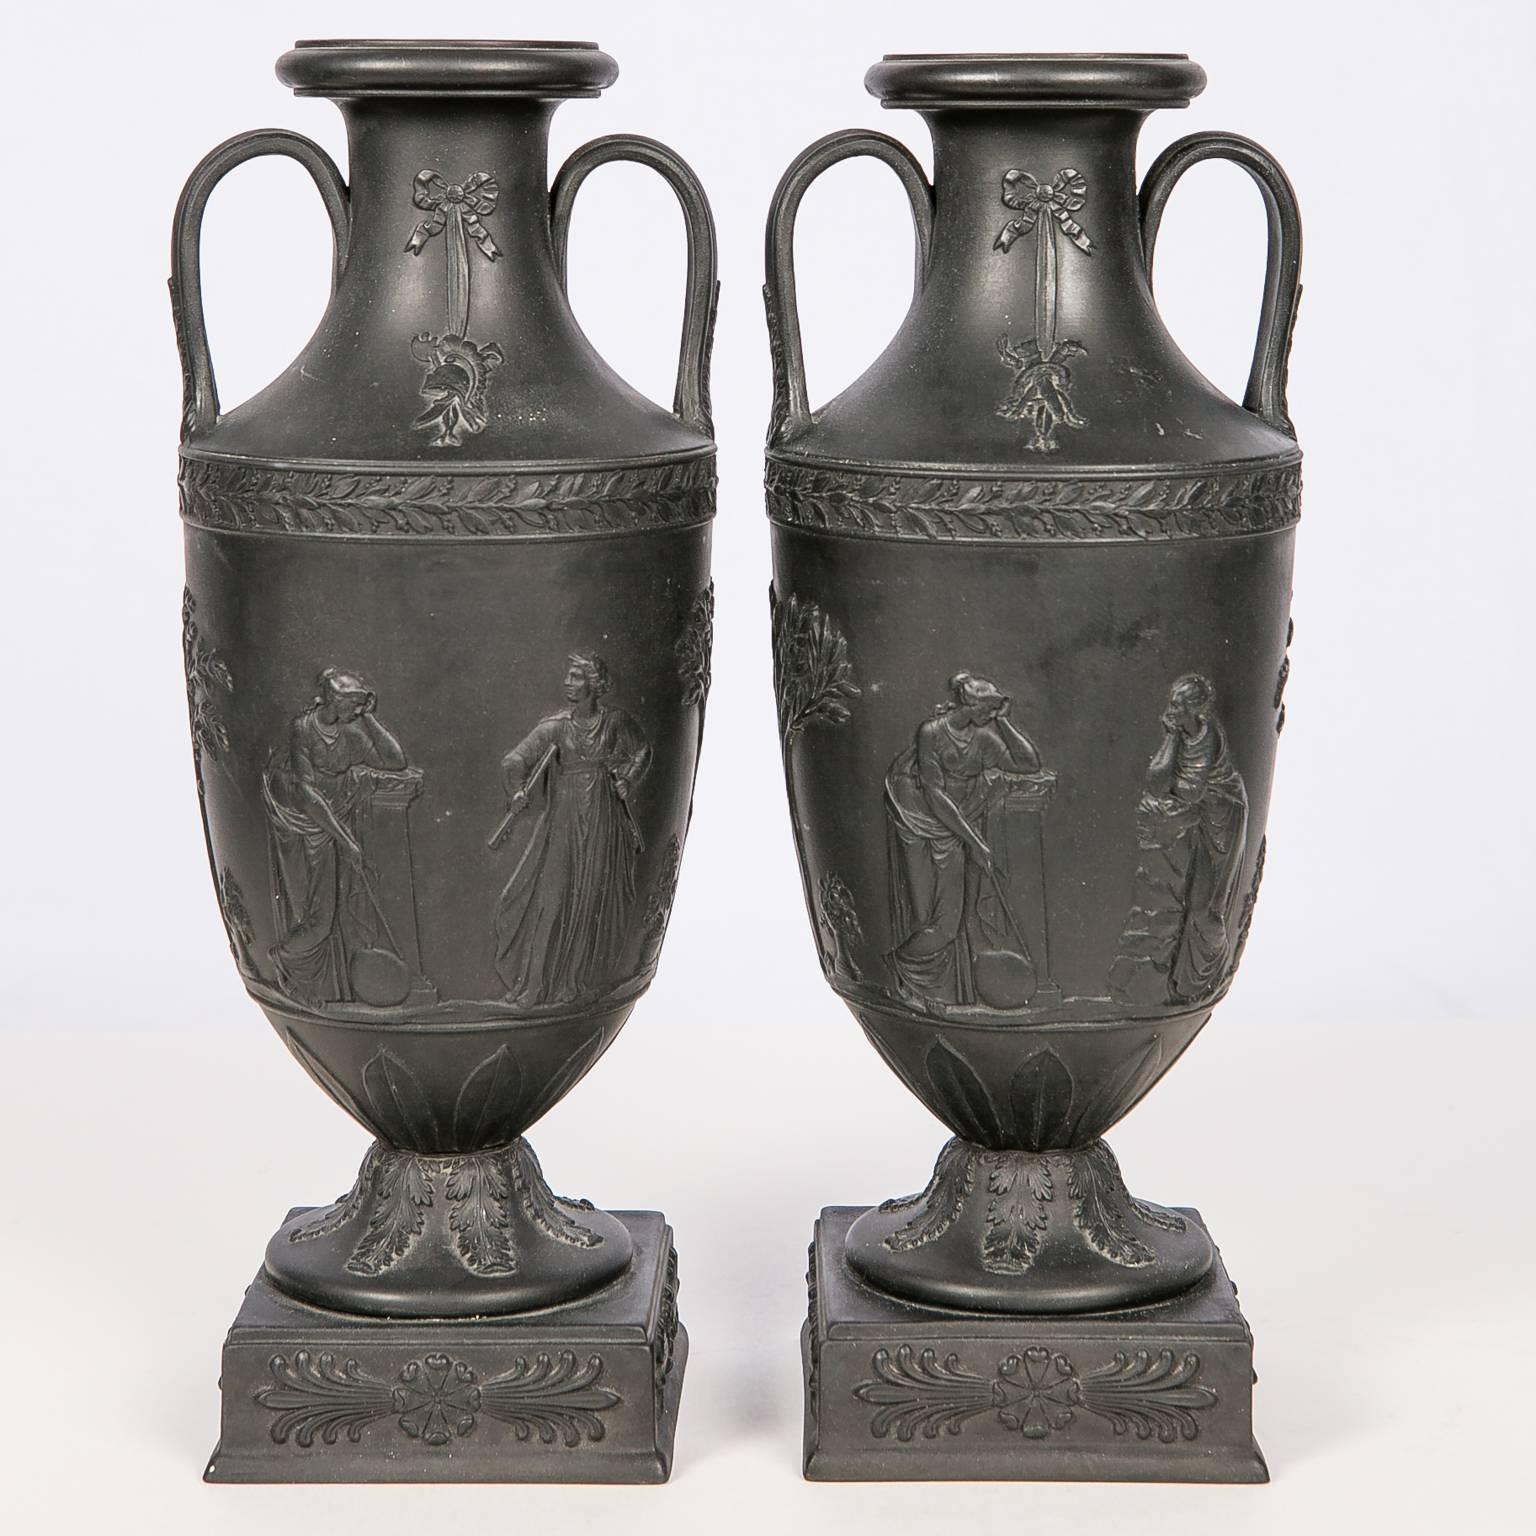  Wedgwood Black Basalt Mantle Vases, Pair 1